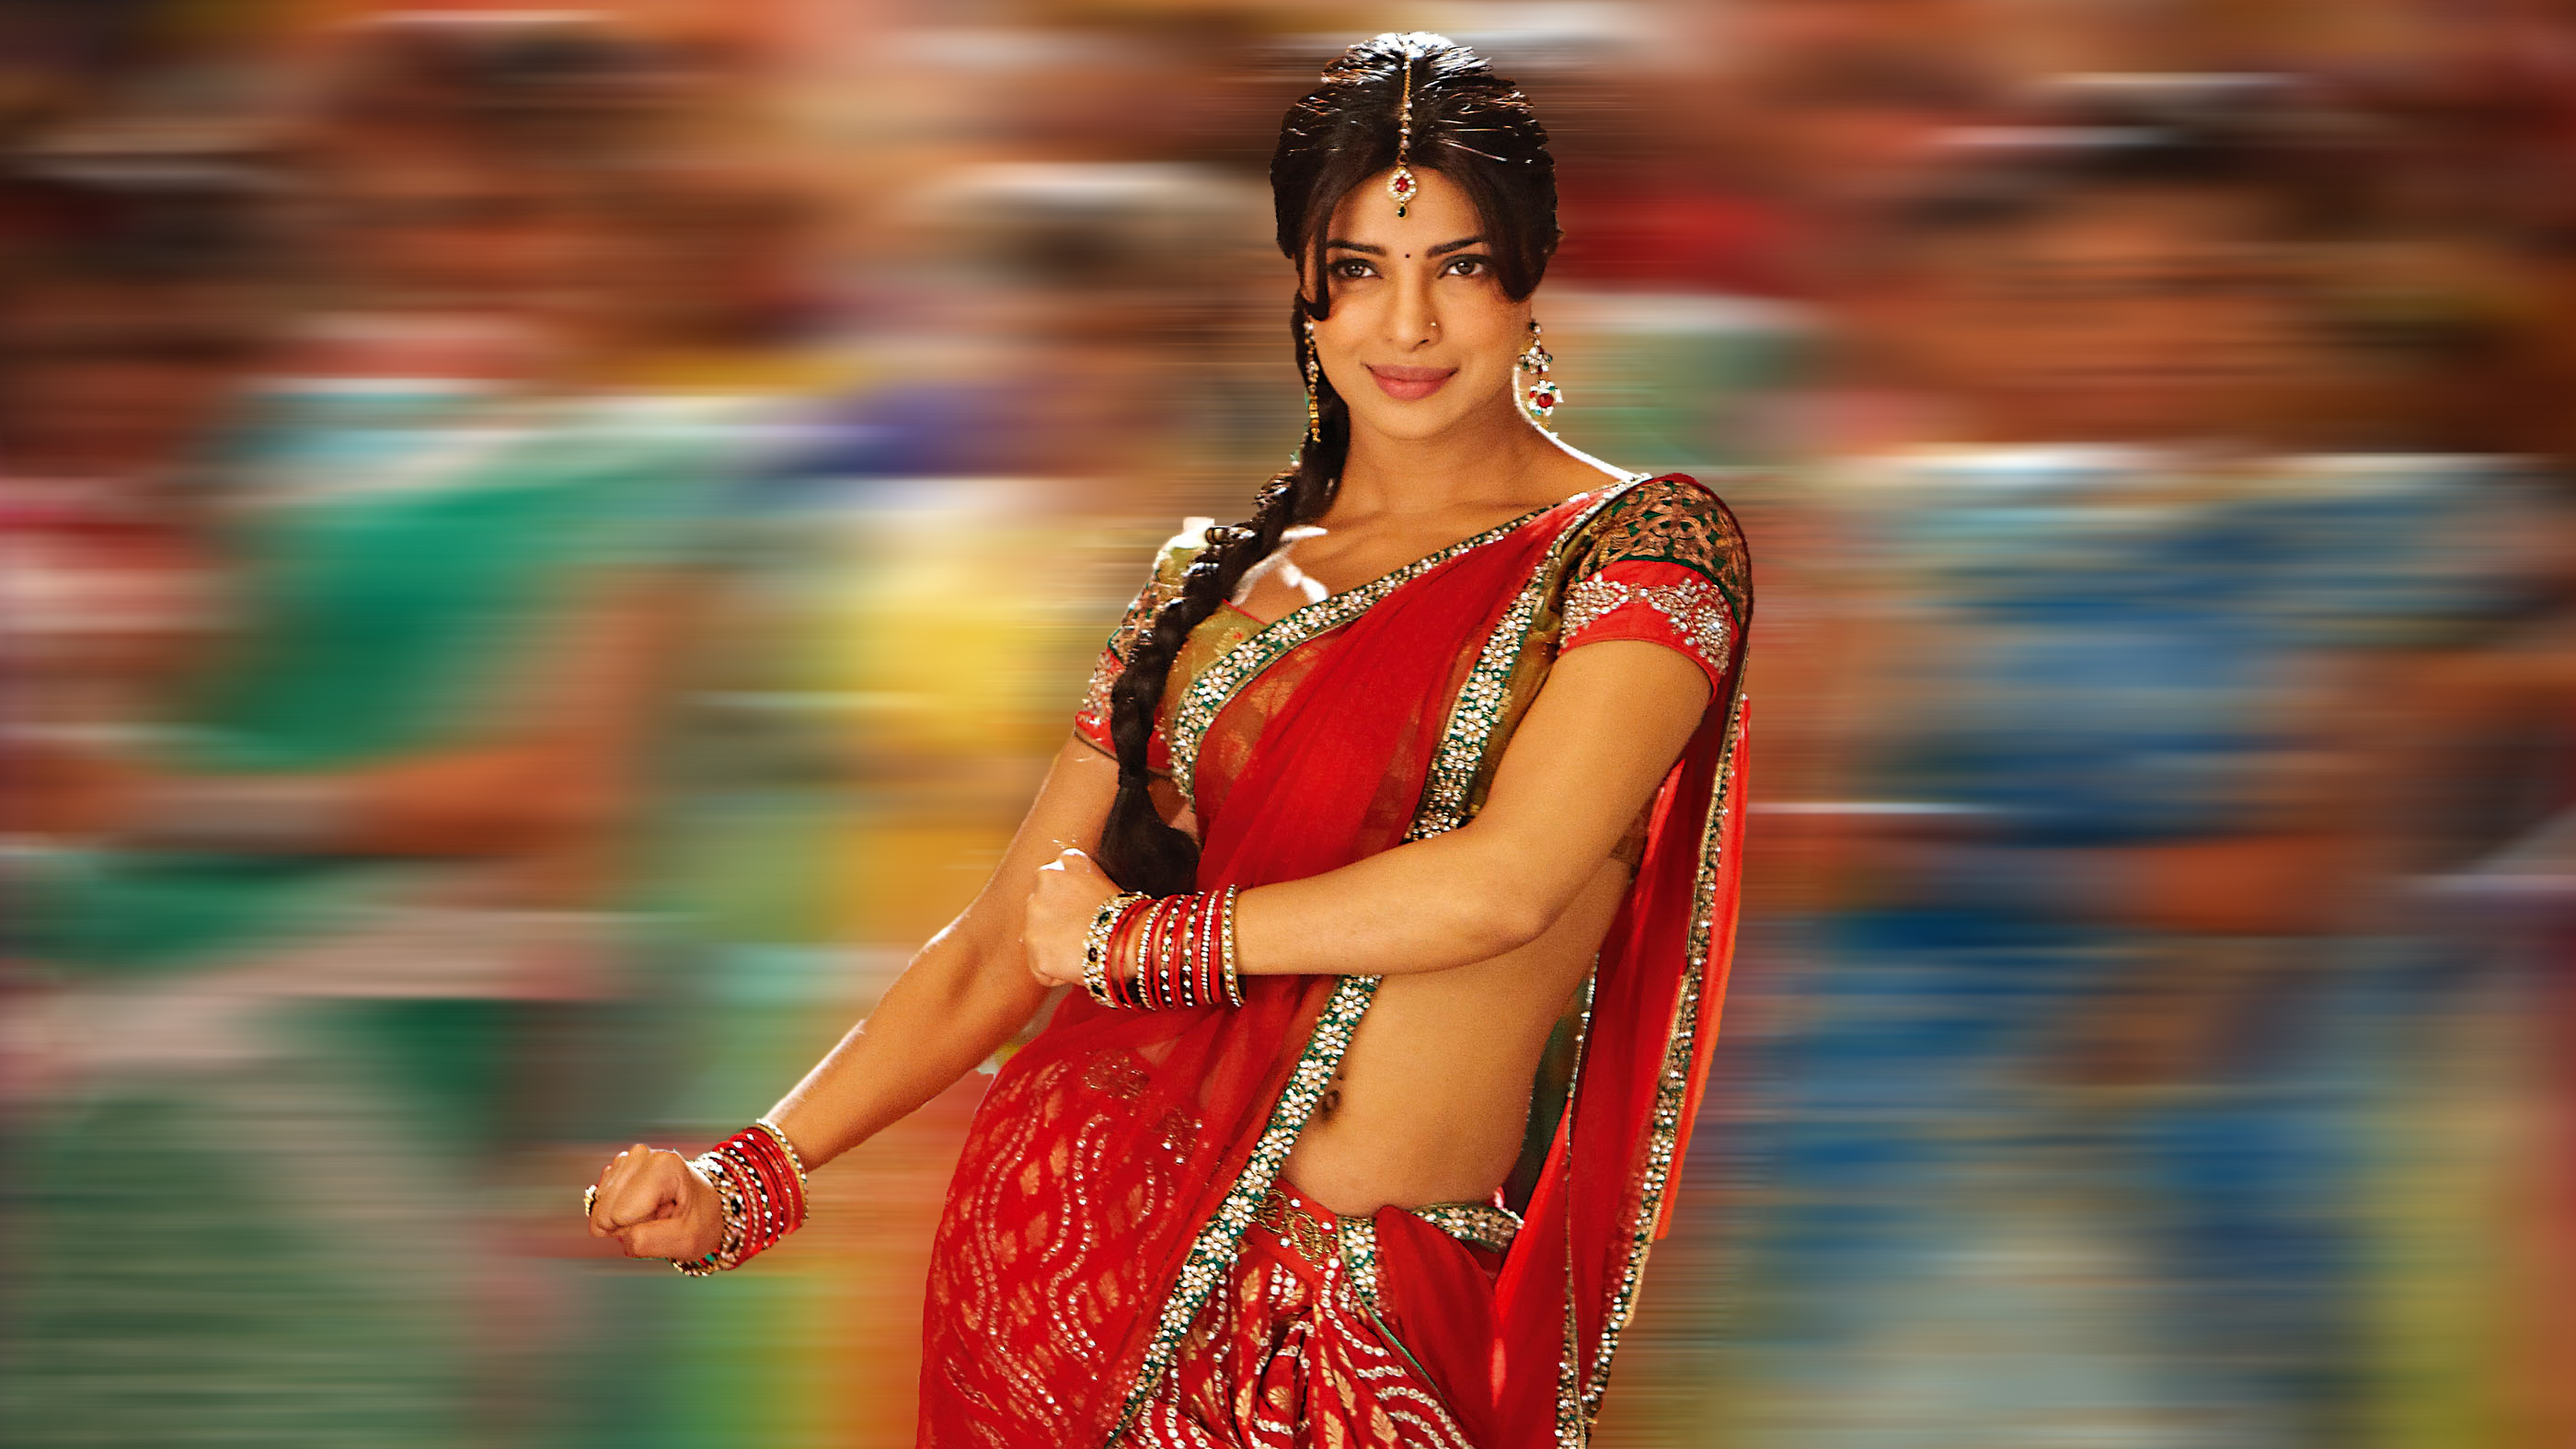 bollywood schauspielerin in saree hd wallpaper,sari,abdomen,model,kofferraum,formelle kleidung